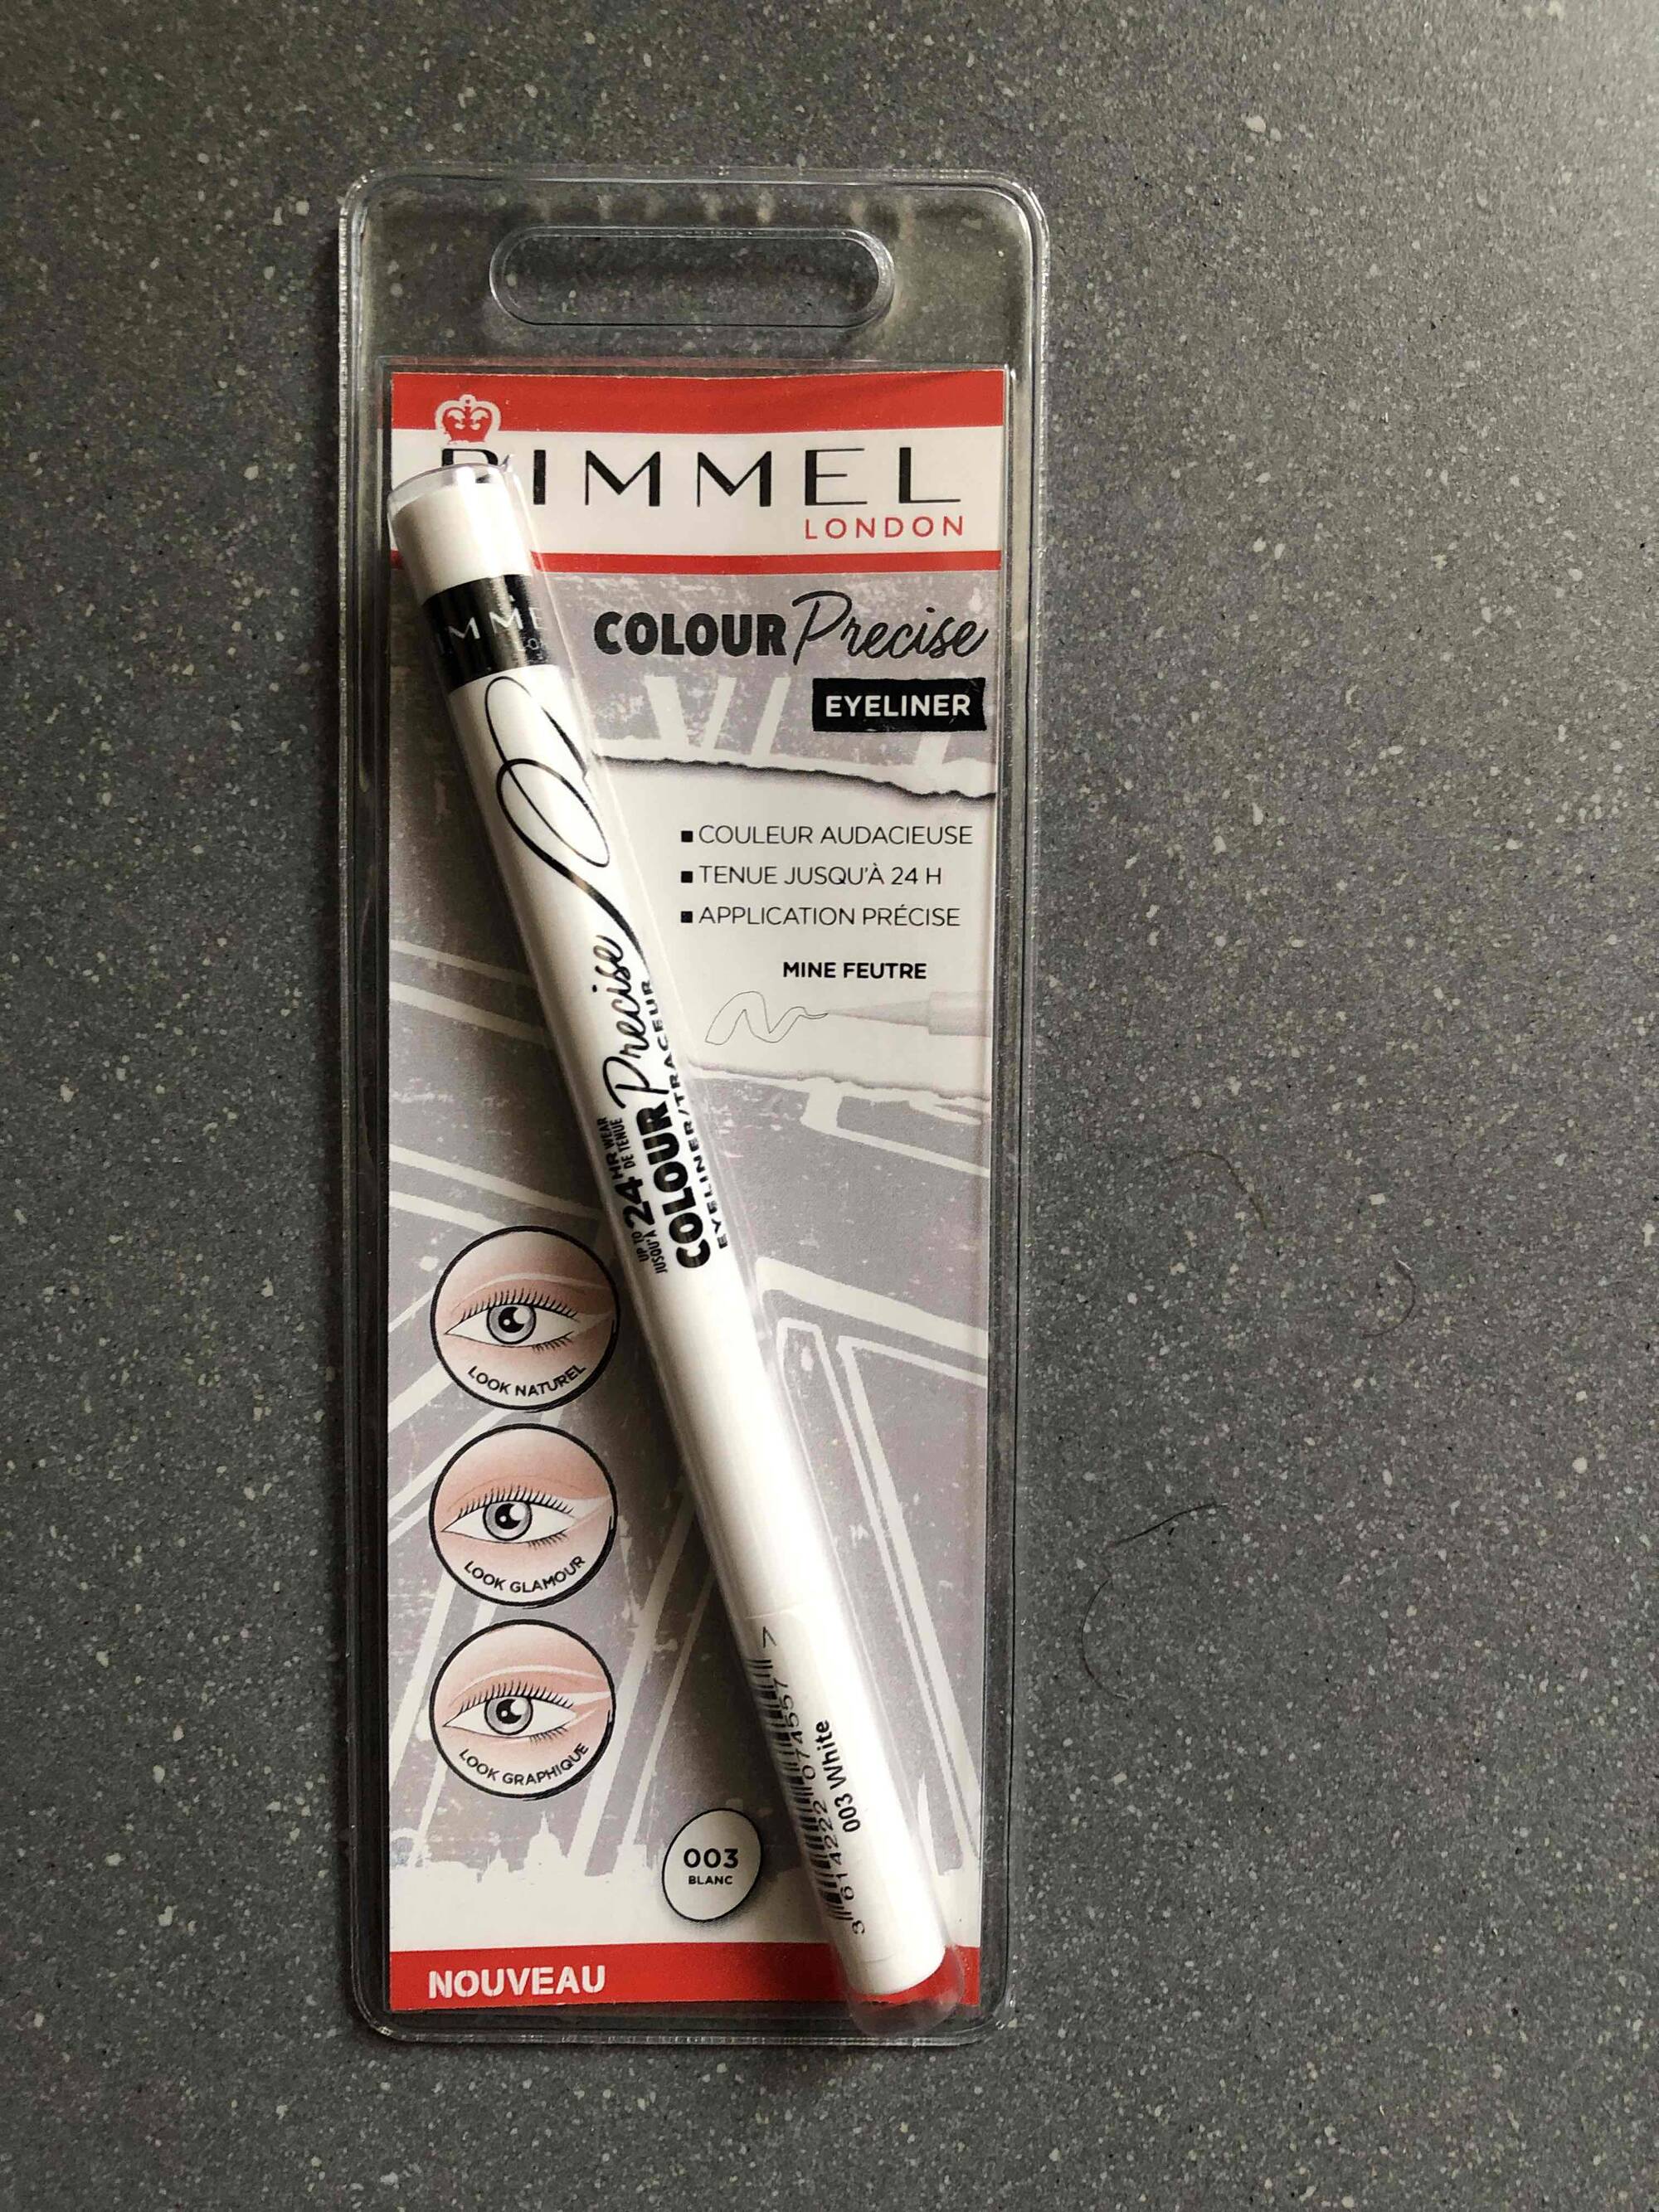 RIMMEL - Colour precise eyeliner